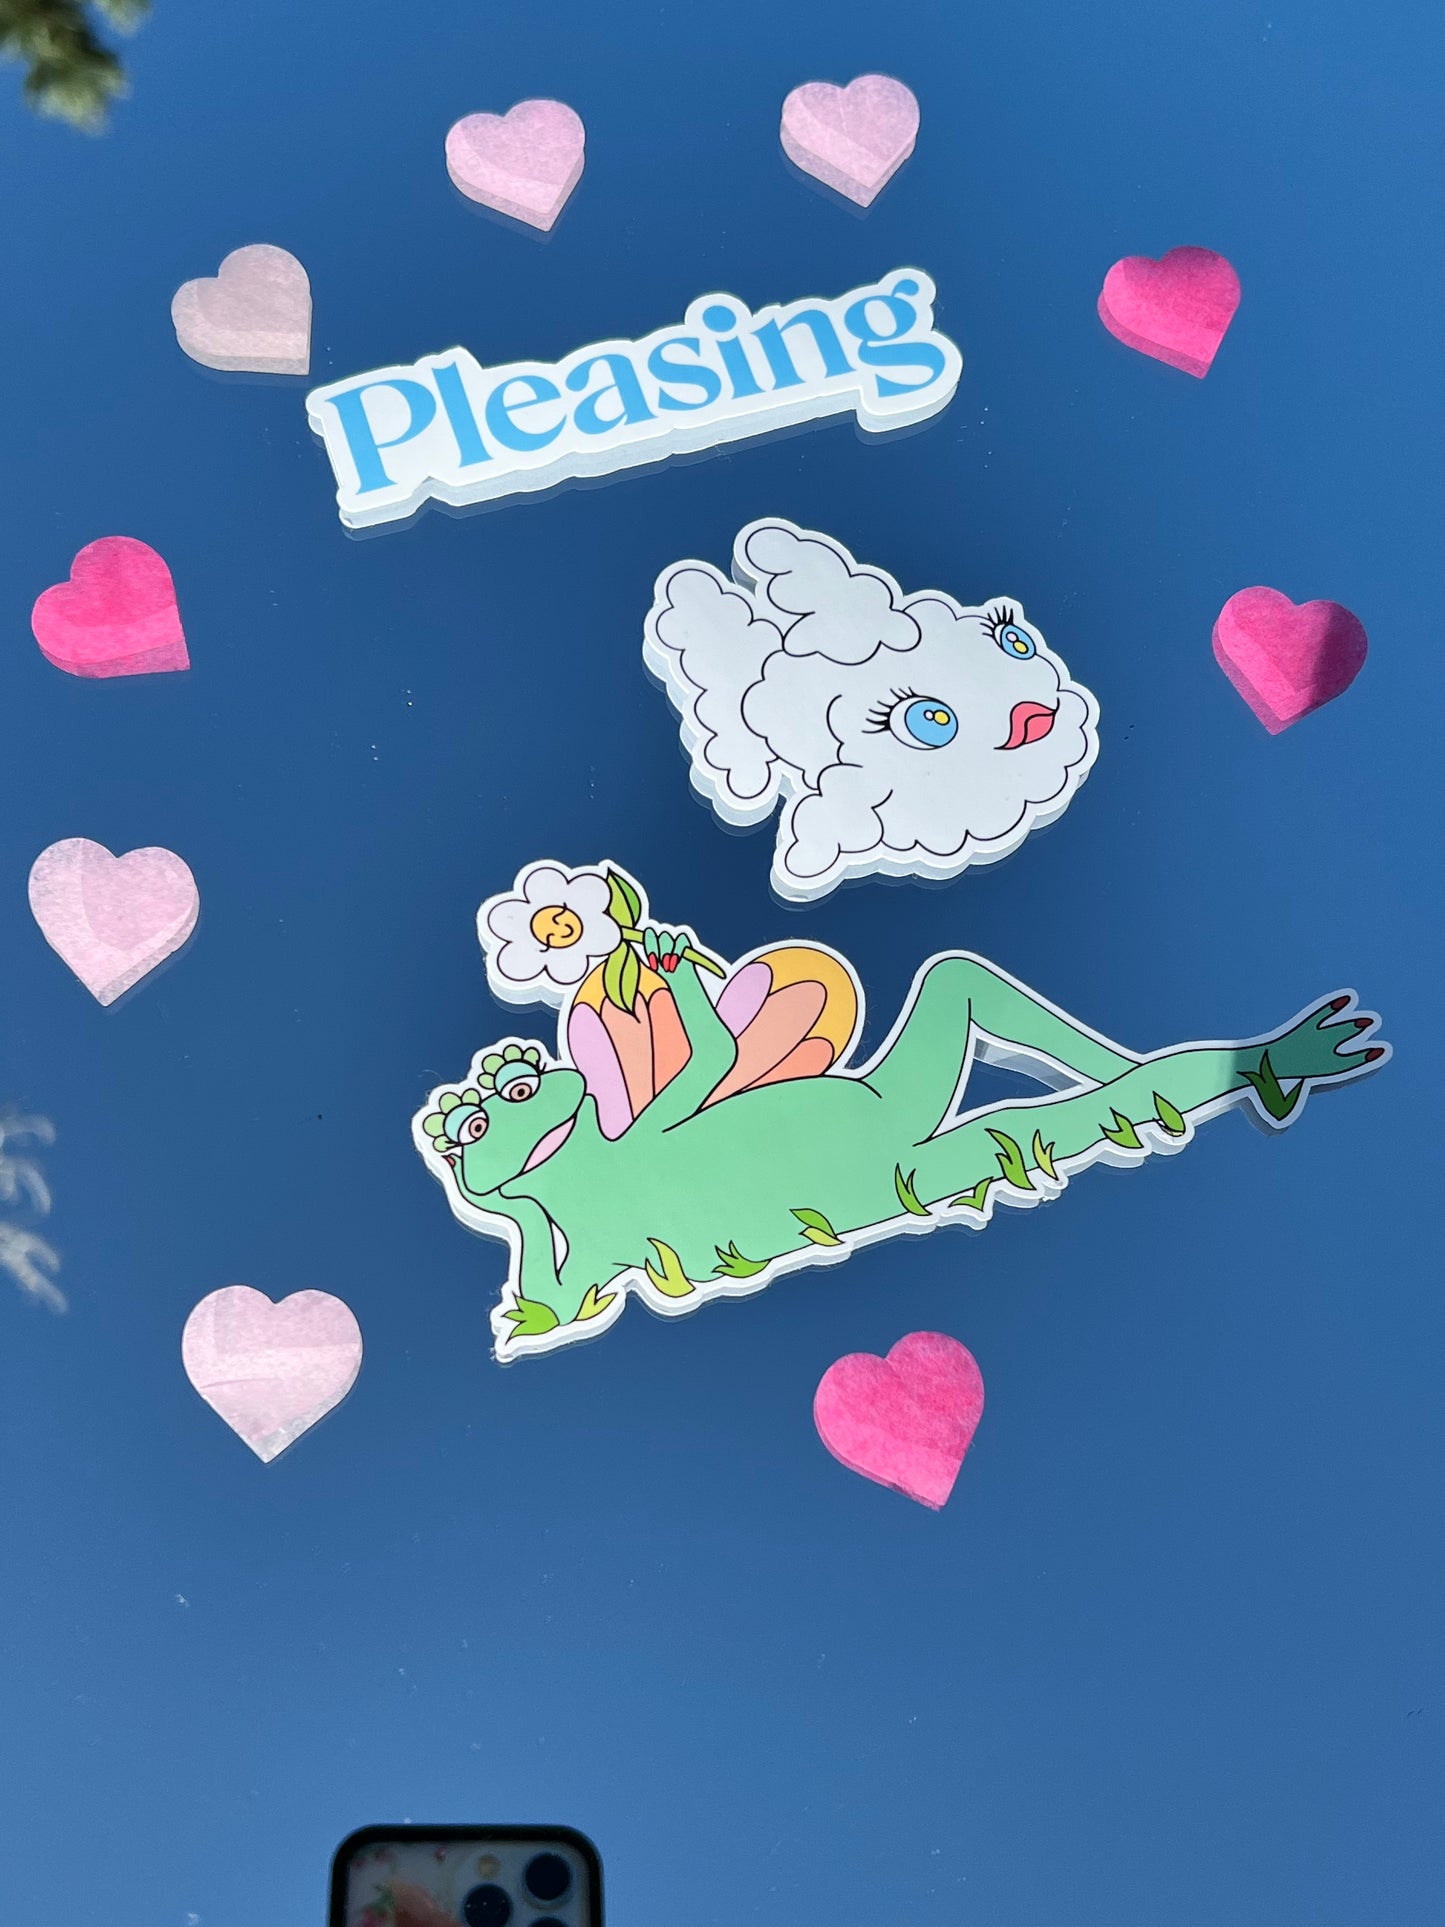 Pleasing Sticker